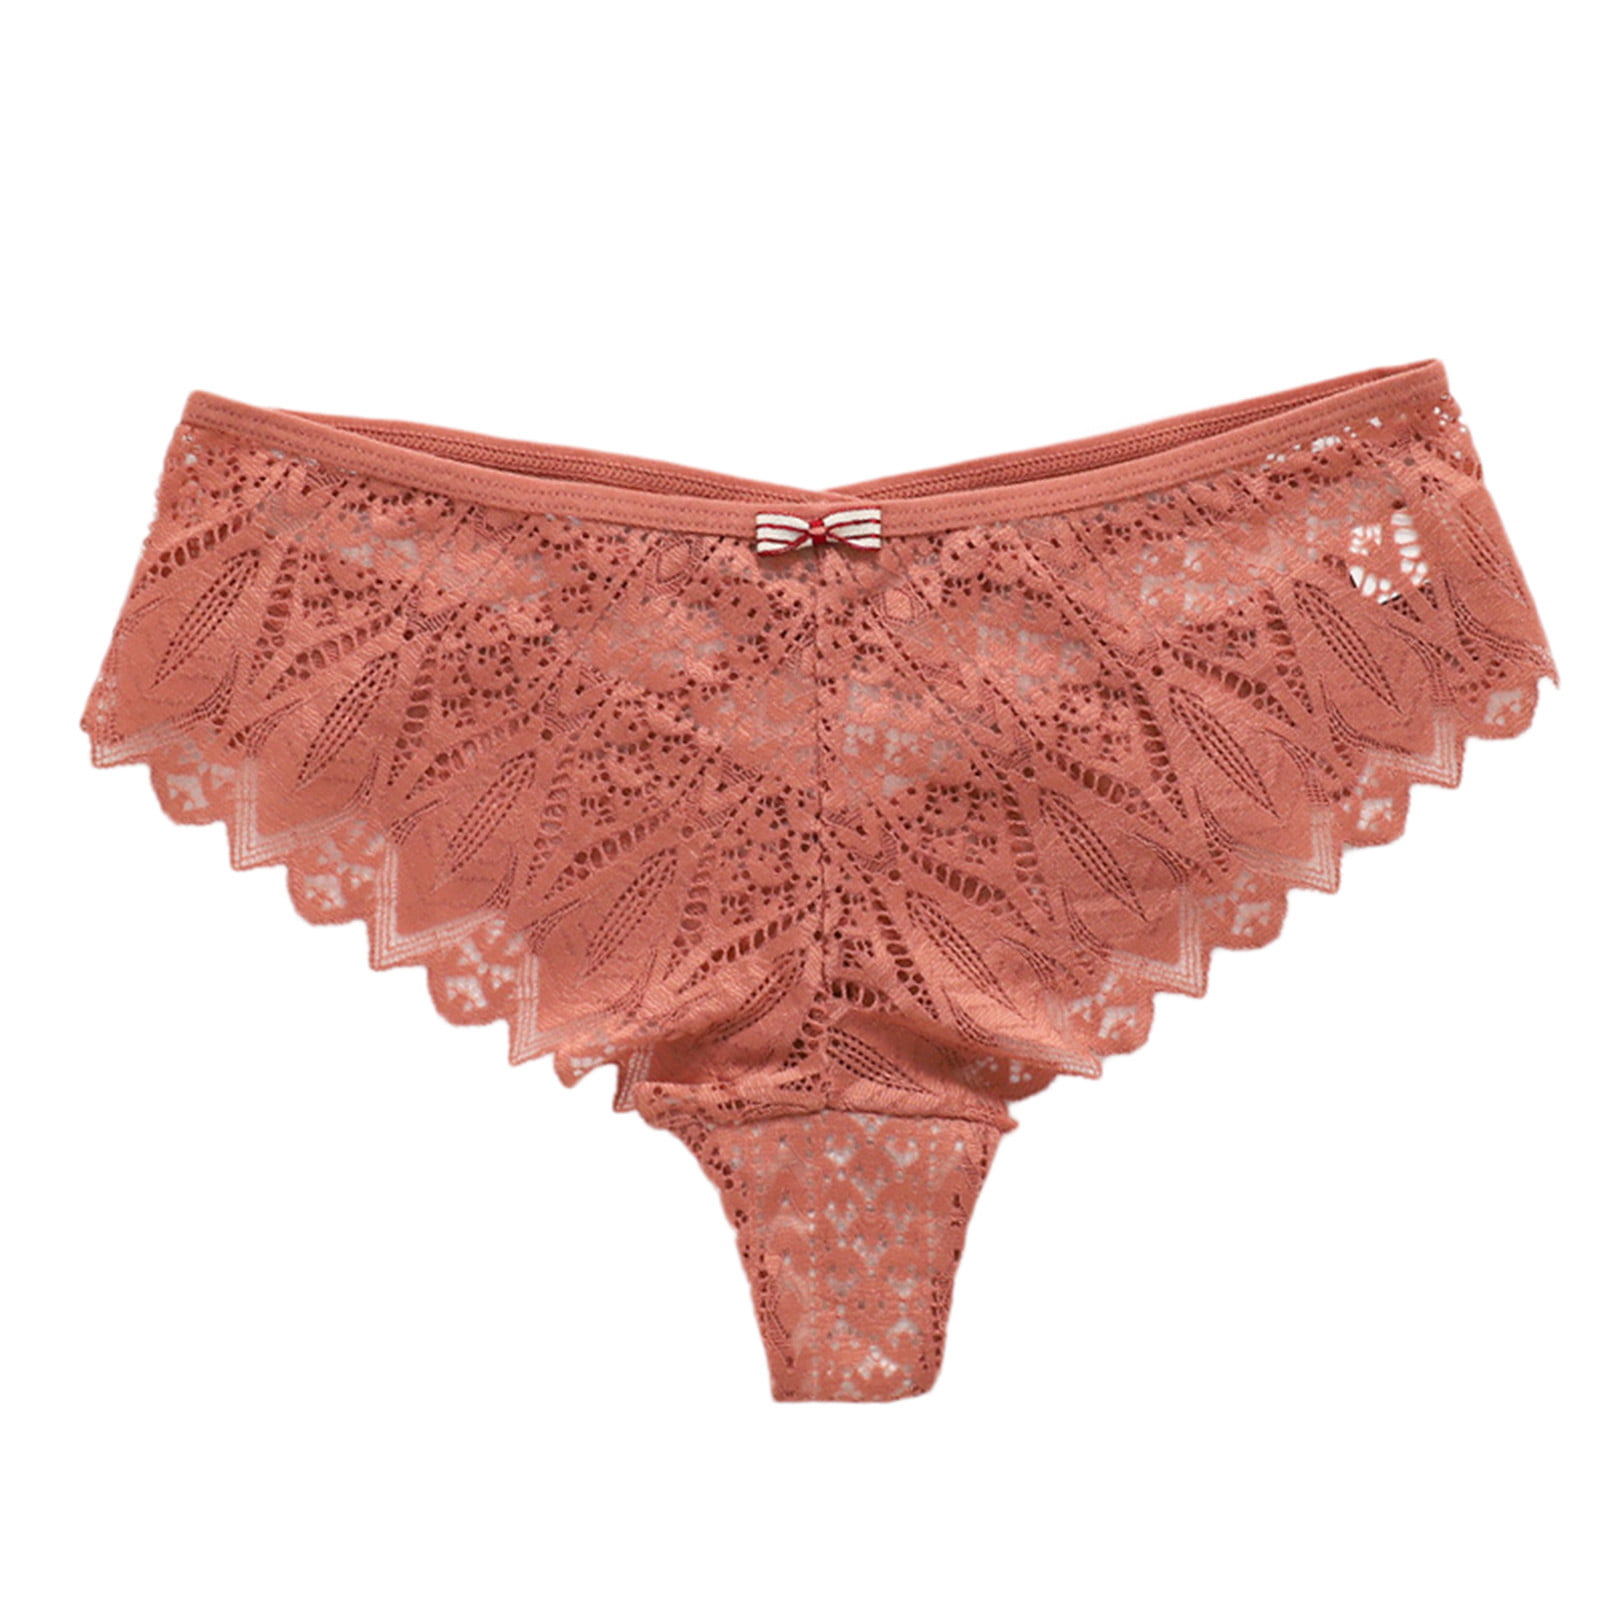 Zuwimk Panties For Women ,Women's Underwear No Panty Line Promise Tactel  Lace Bikini Pink,One Size